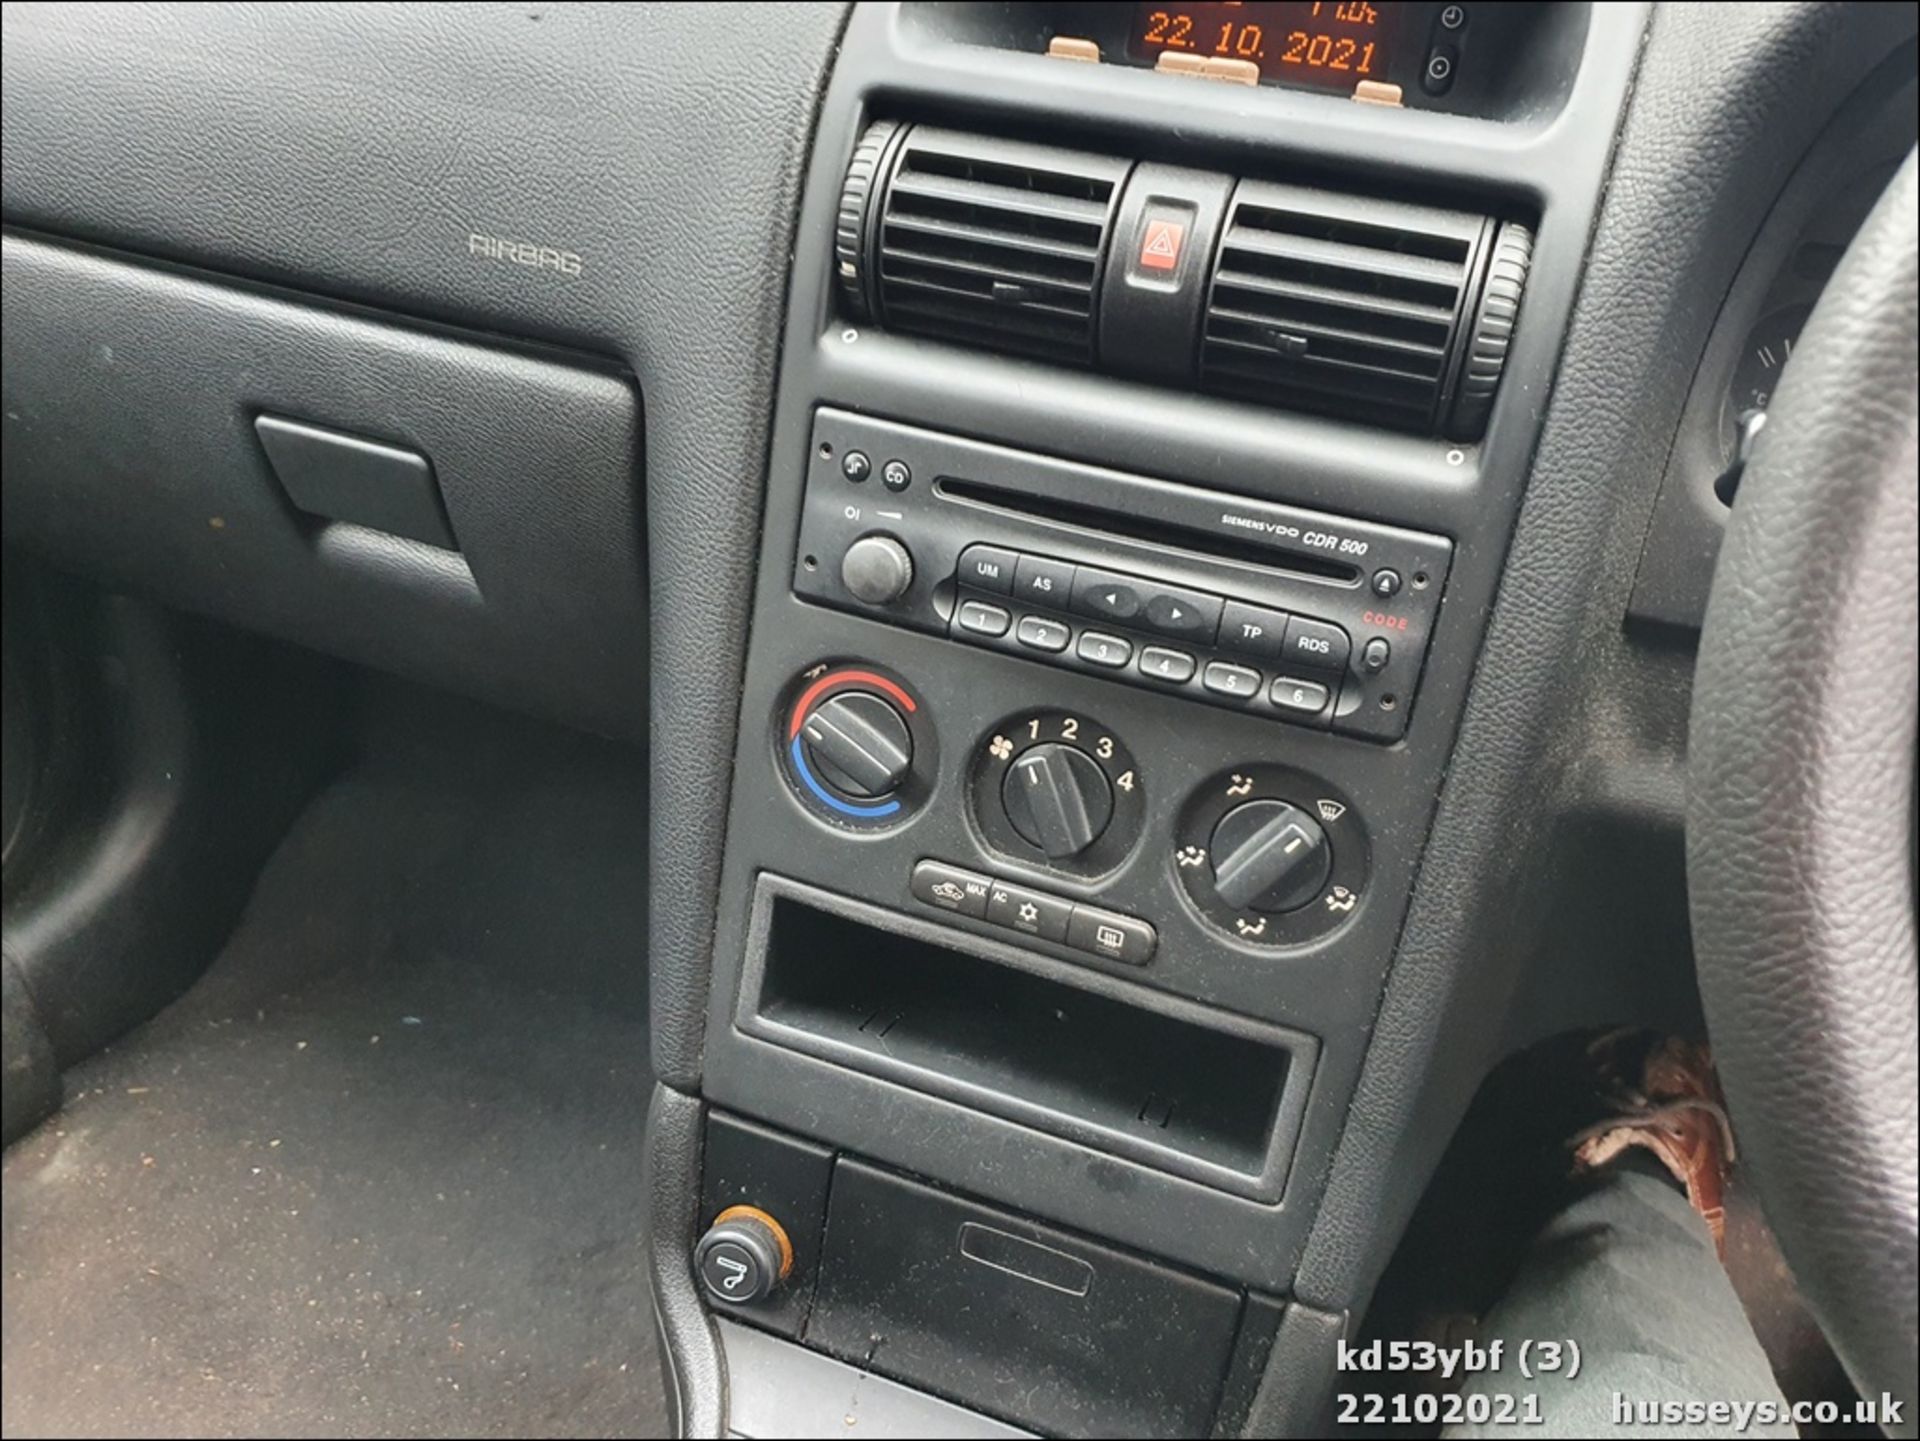 03/53 VAUXHALL ASTRA LS 16V - 1389cc 5dr Hatchback (Silver, 87k) - Image 3 of 14